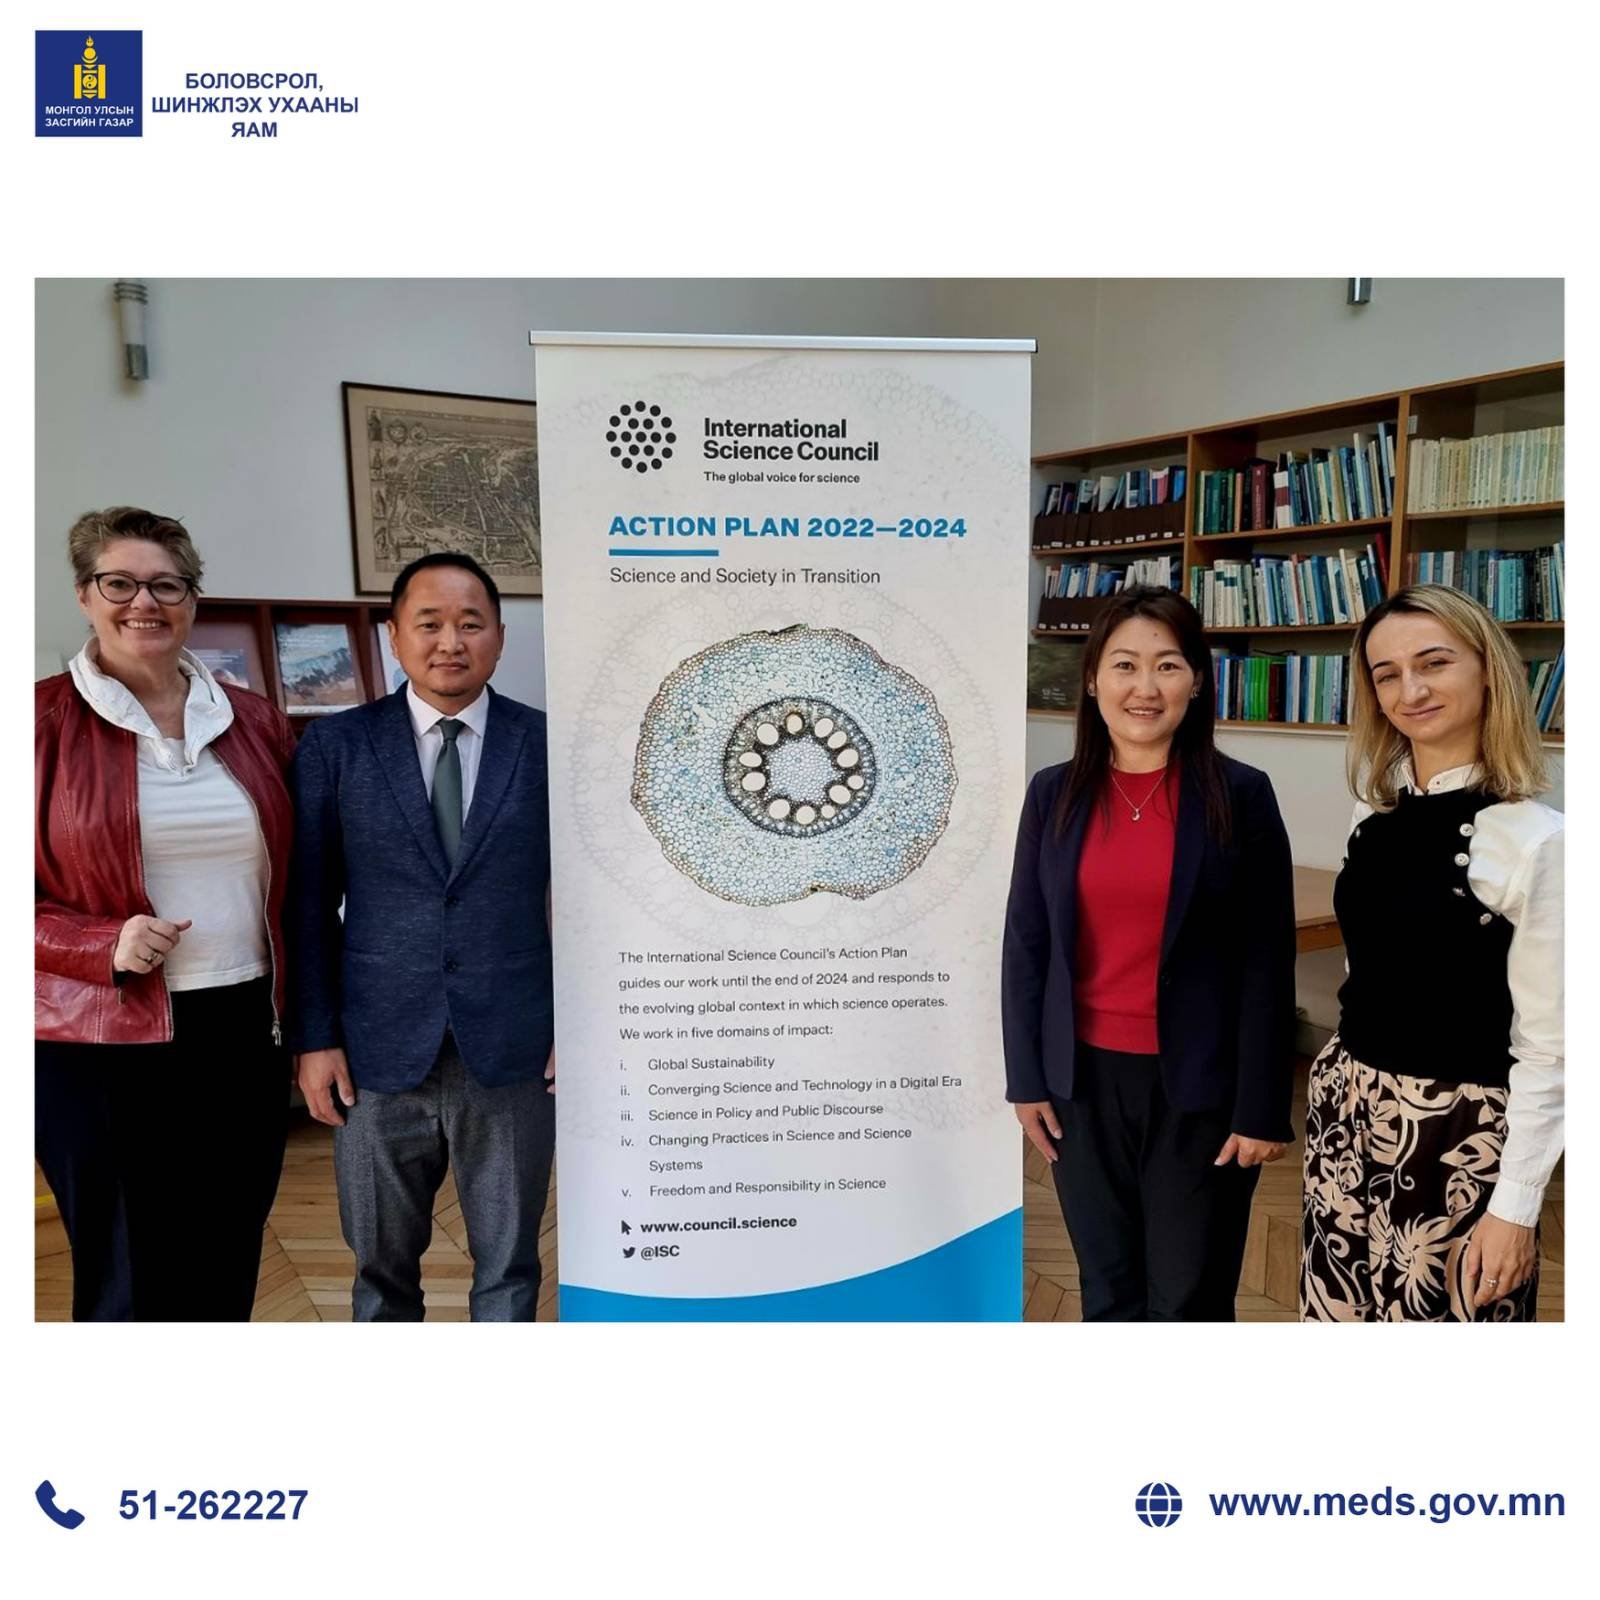 Олон улсын шинжлэх ухааны зөвлөлөөс Монгол улсын Шинжлэх ухааны салбарын шинэчлэлийн зорилтыг дэмжин ажиллана